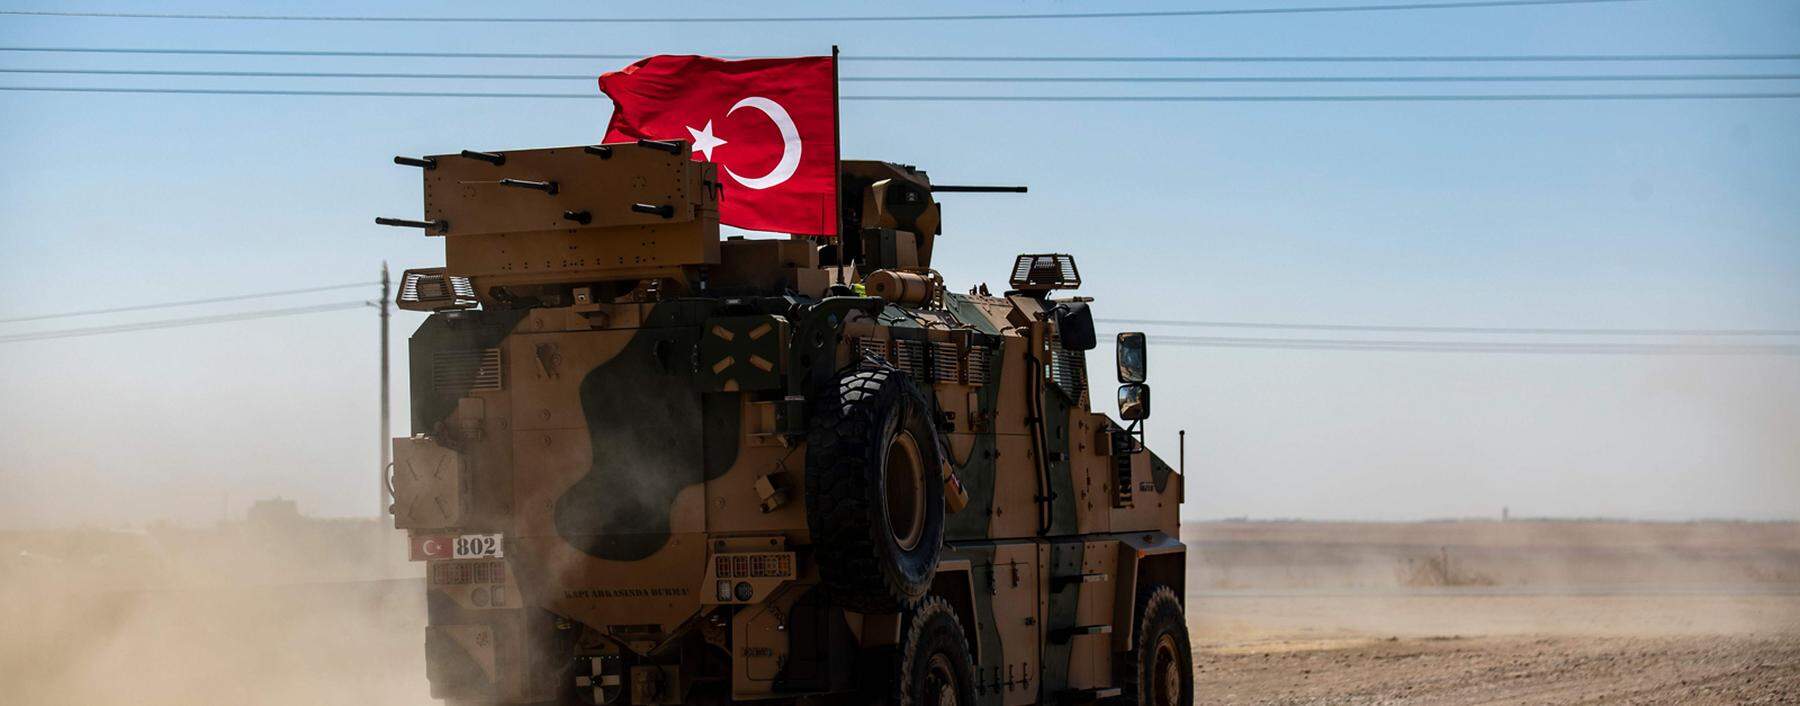 Ein gepanzerter türkischer Aufklärungswagen/Truppentransporter vom Typ „Kirpi“ (Igel) auf Patrouillenfahrt unweit der syrischen Grenze (Archivbild vom September).